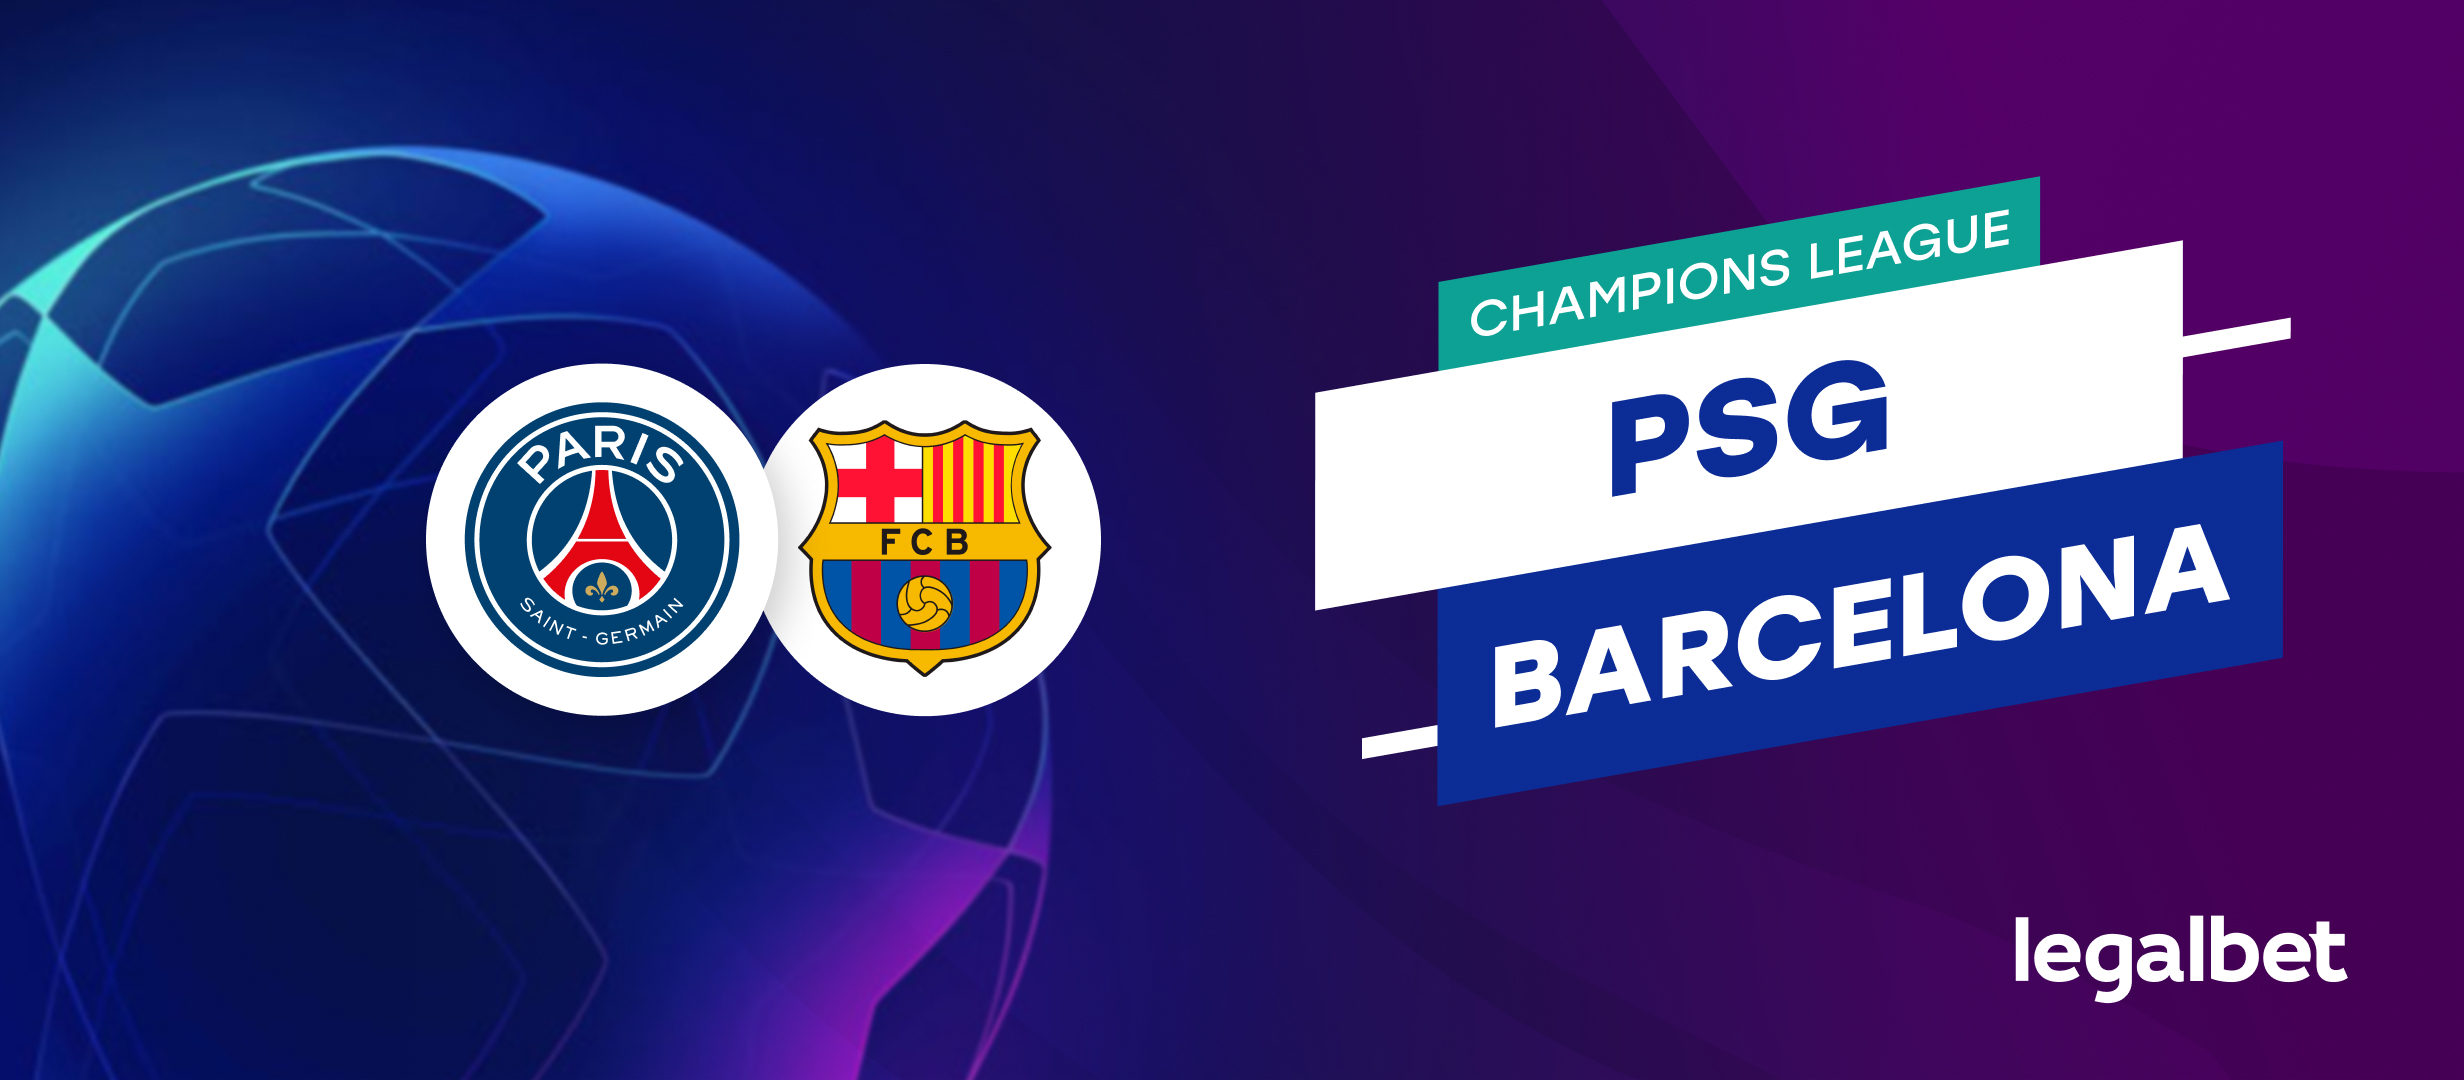 PSG - Barcelona | Ponturi si cote la pariuri